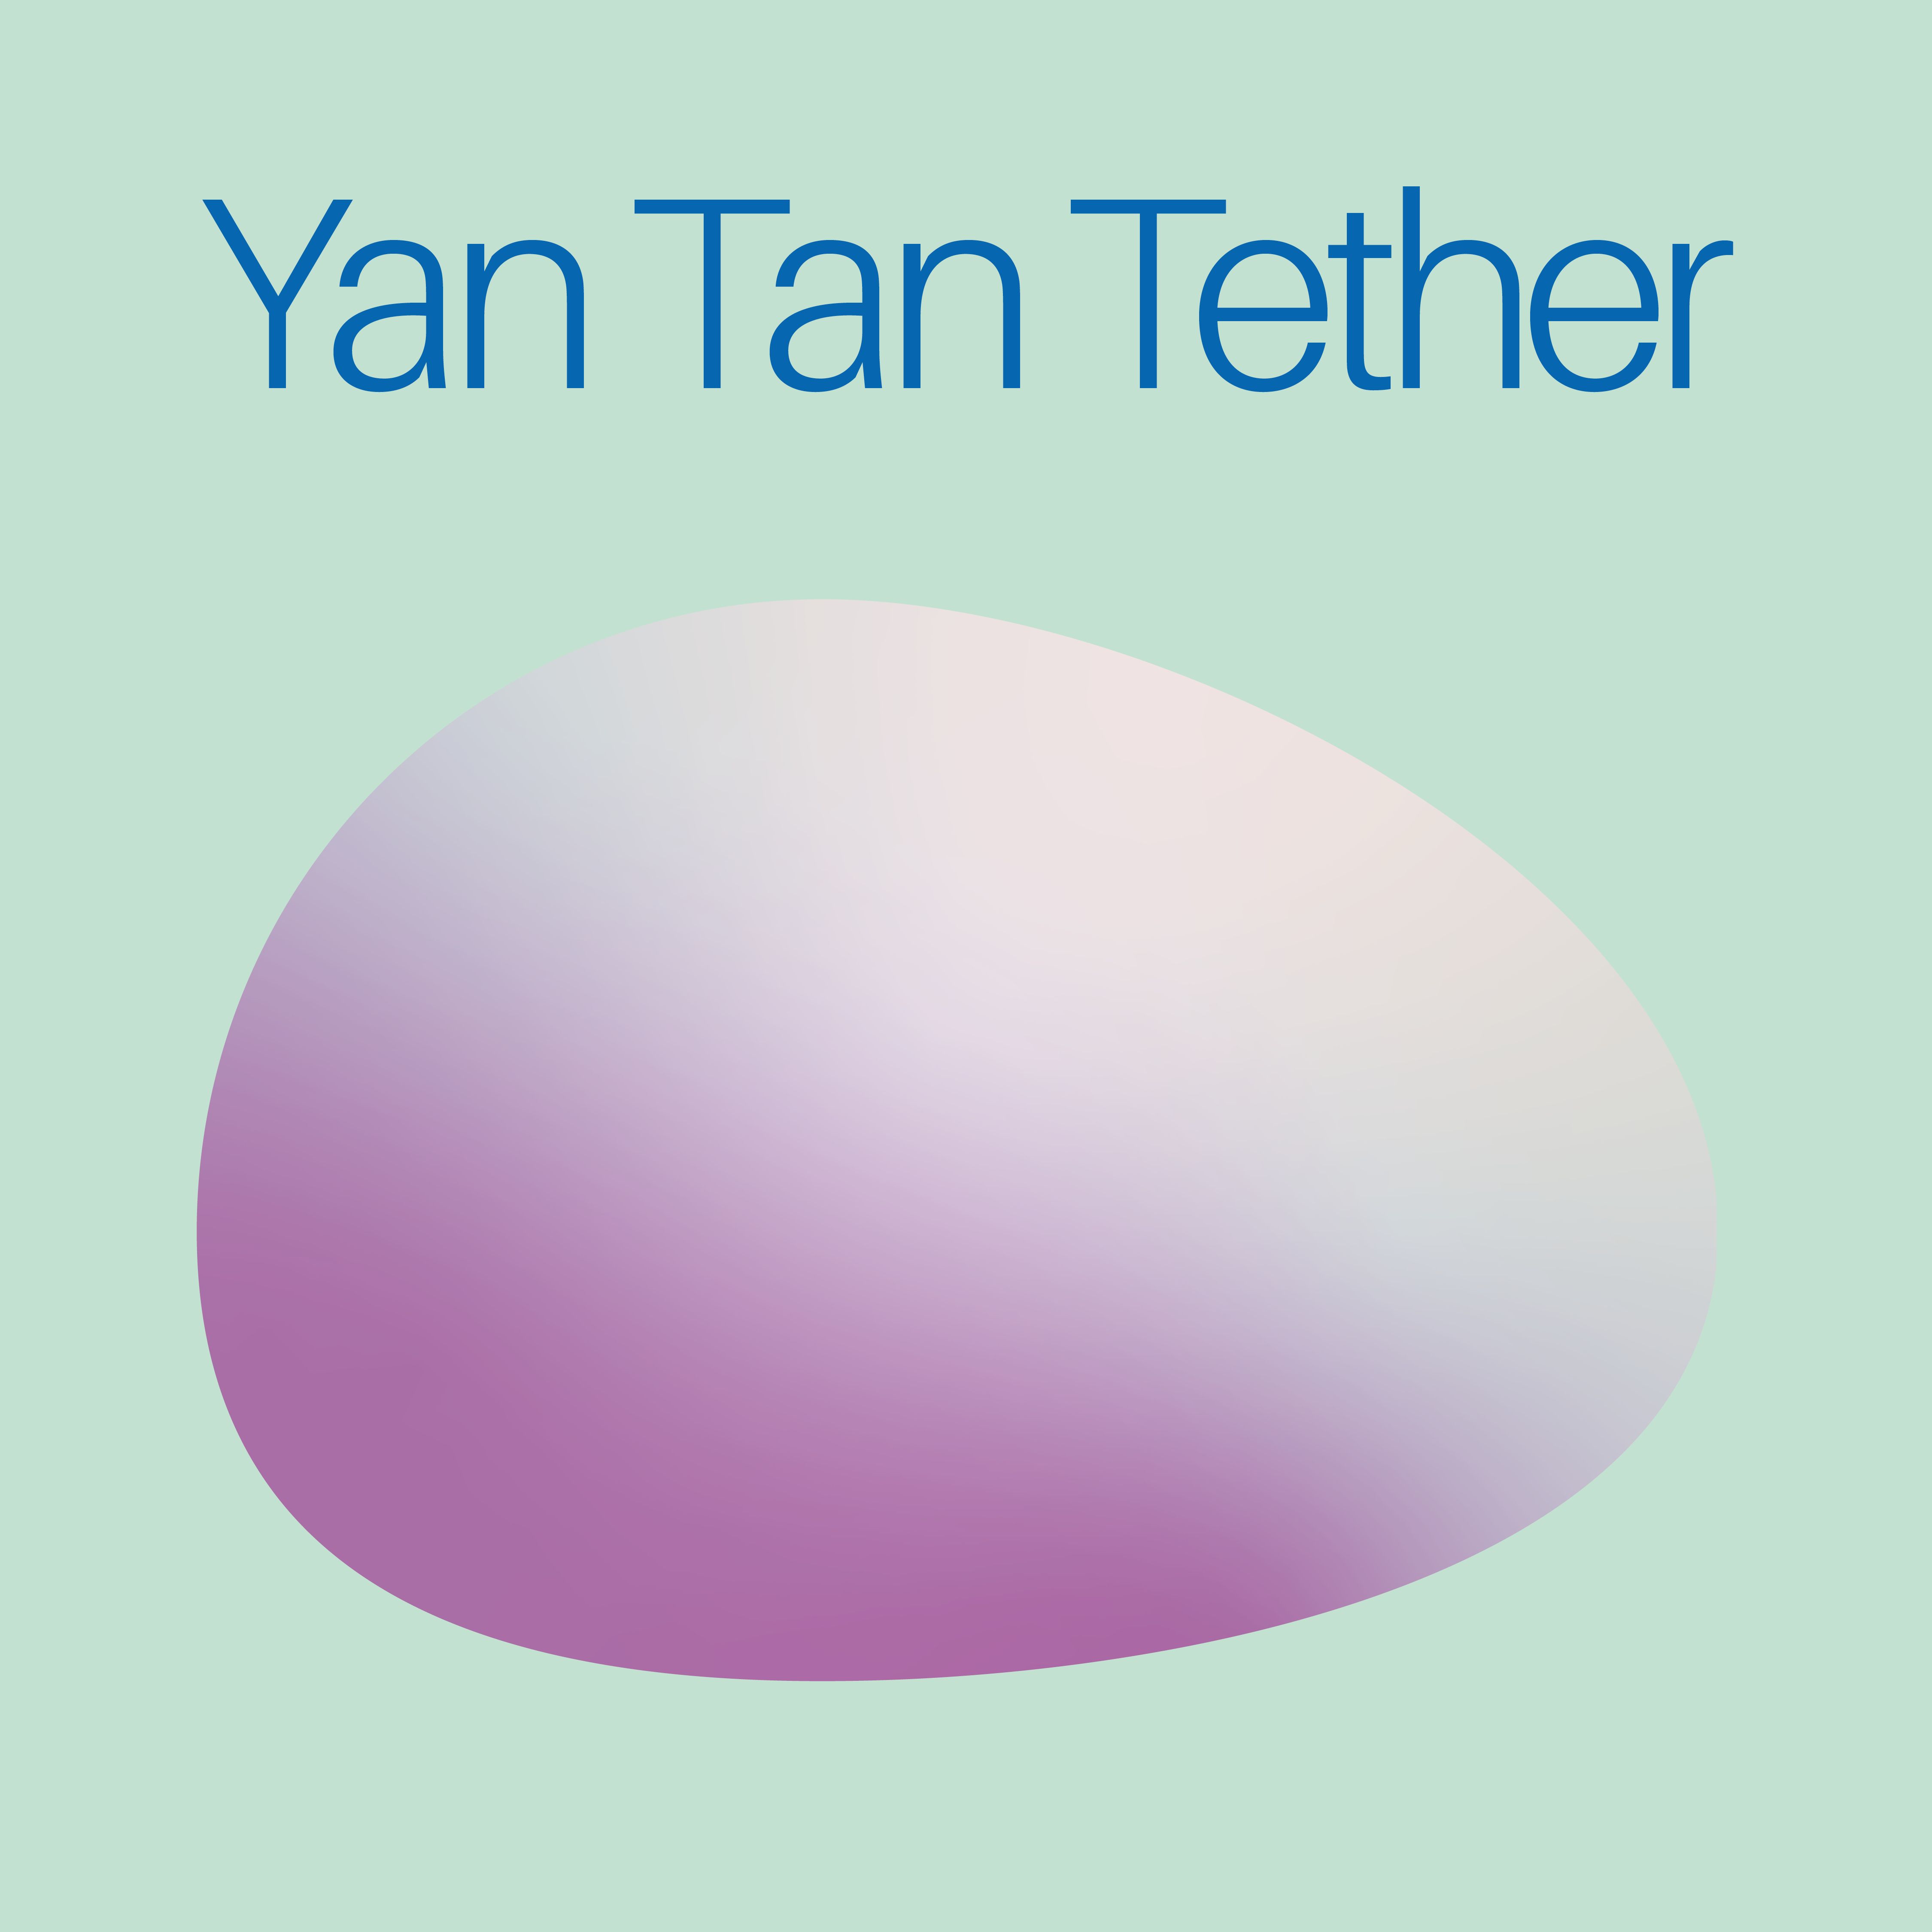 Yan Tan Tether